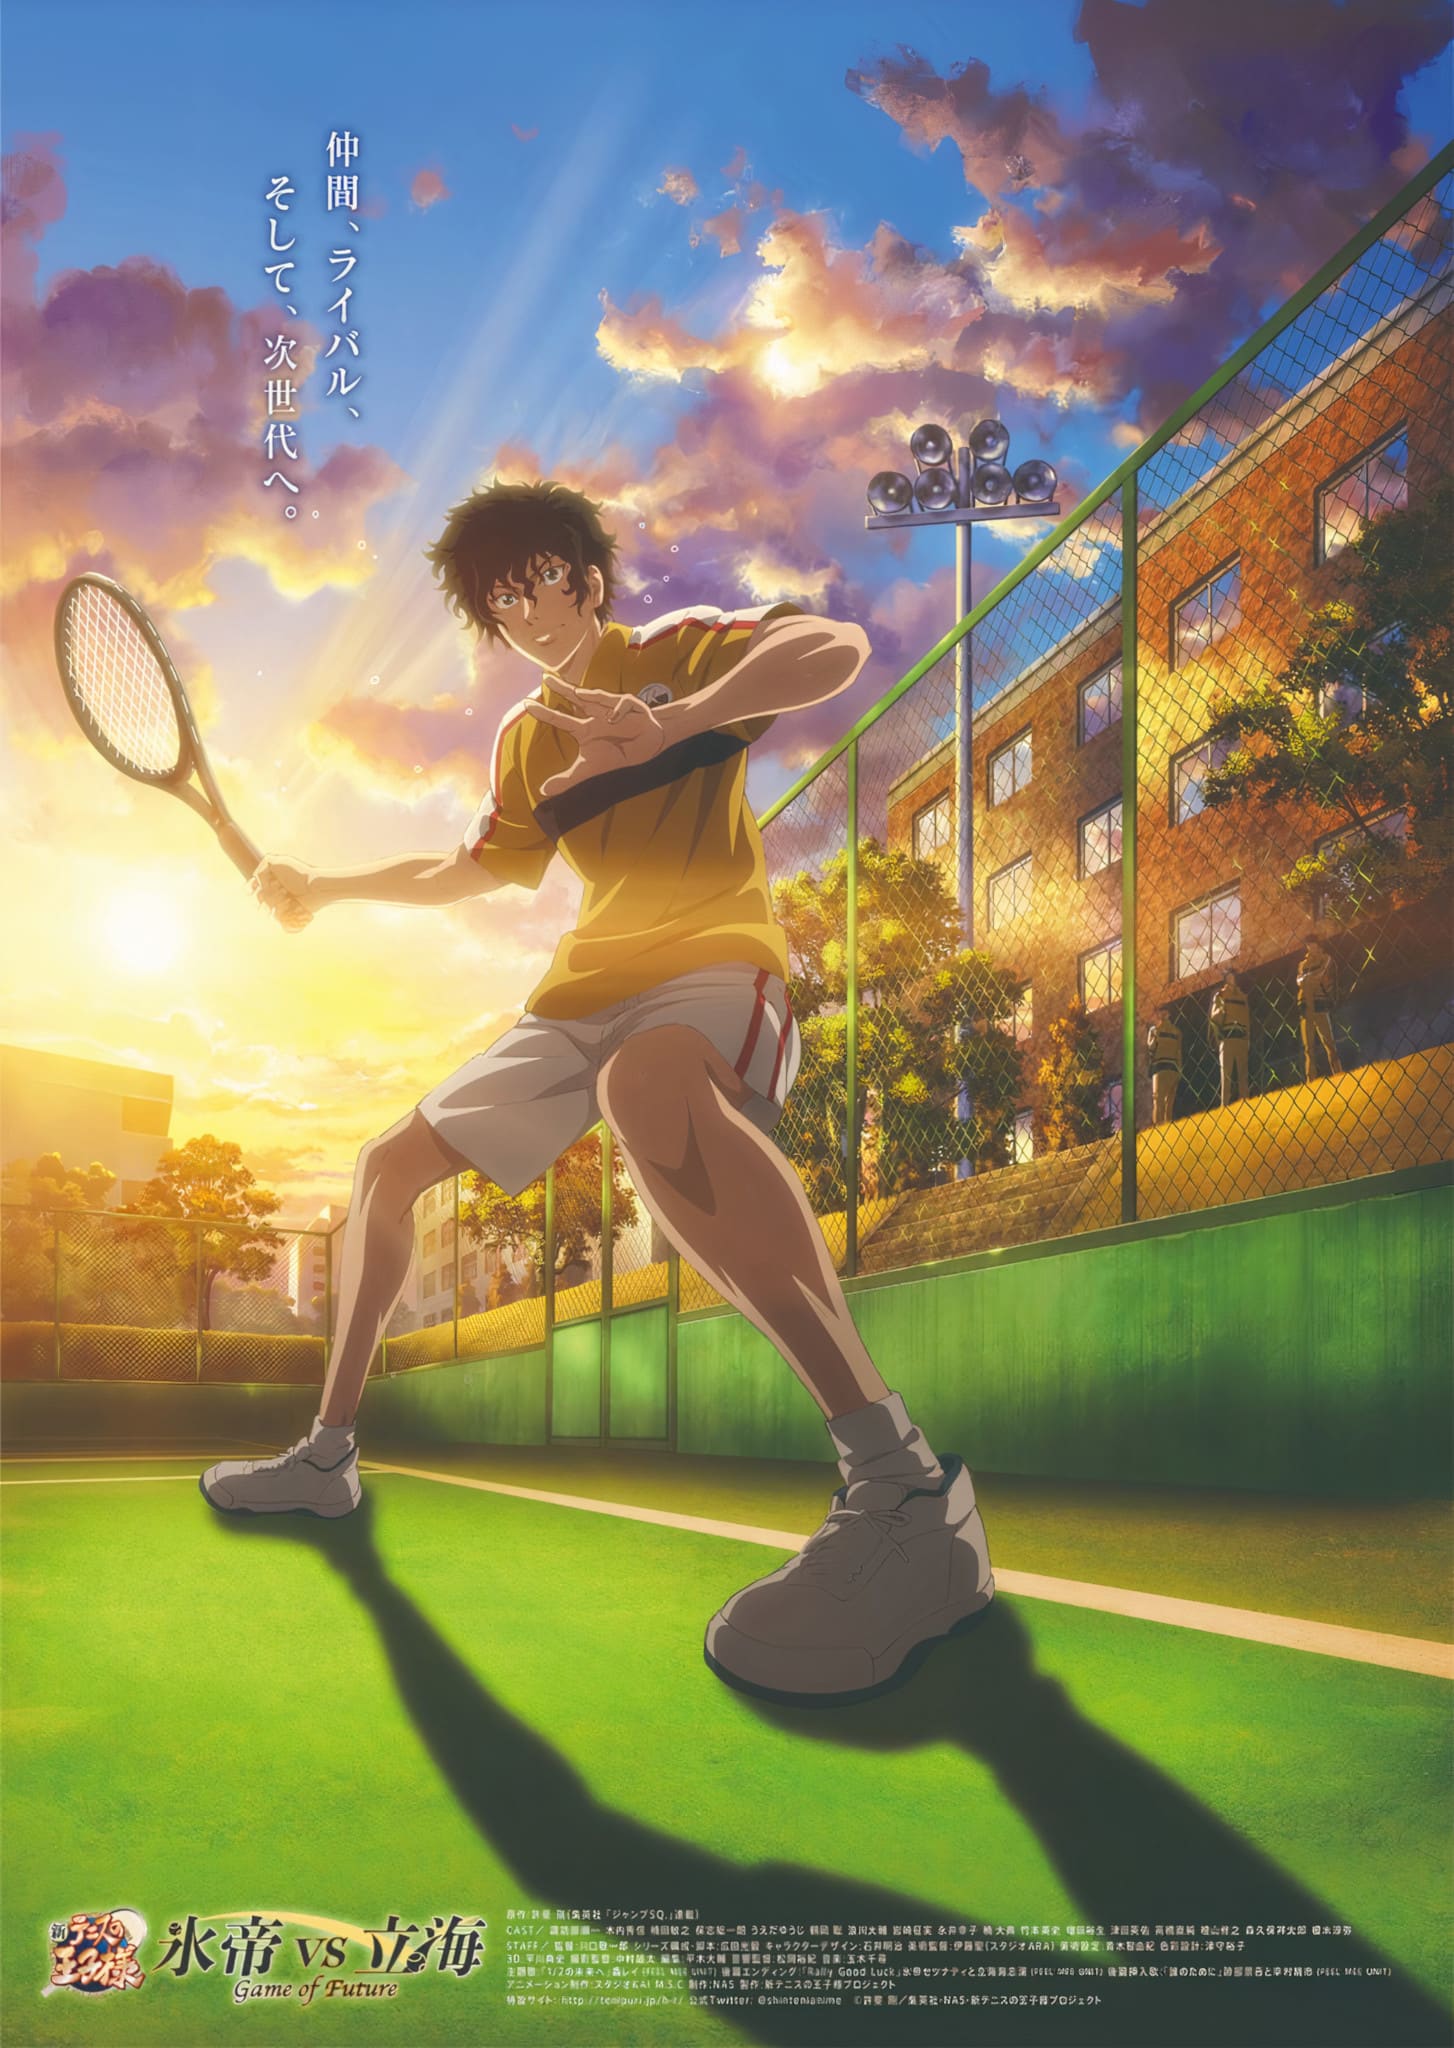 Trailer pour anime The Prince of Tennis : Hyotei vs Rikkai Partie 2